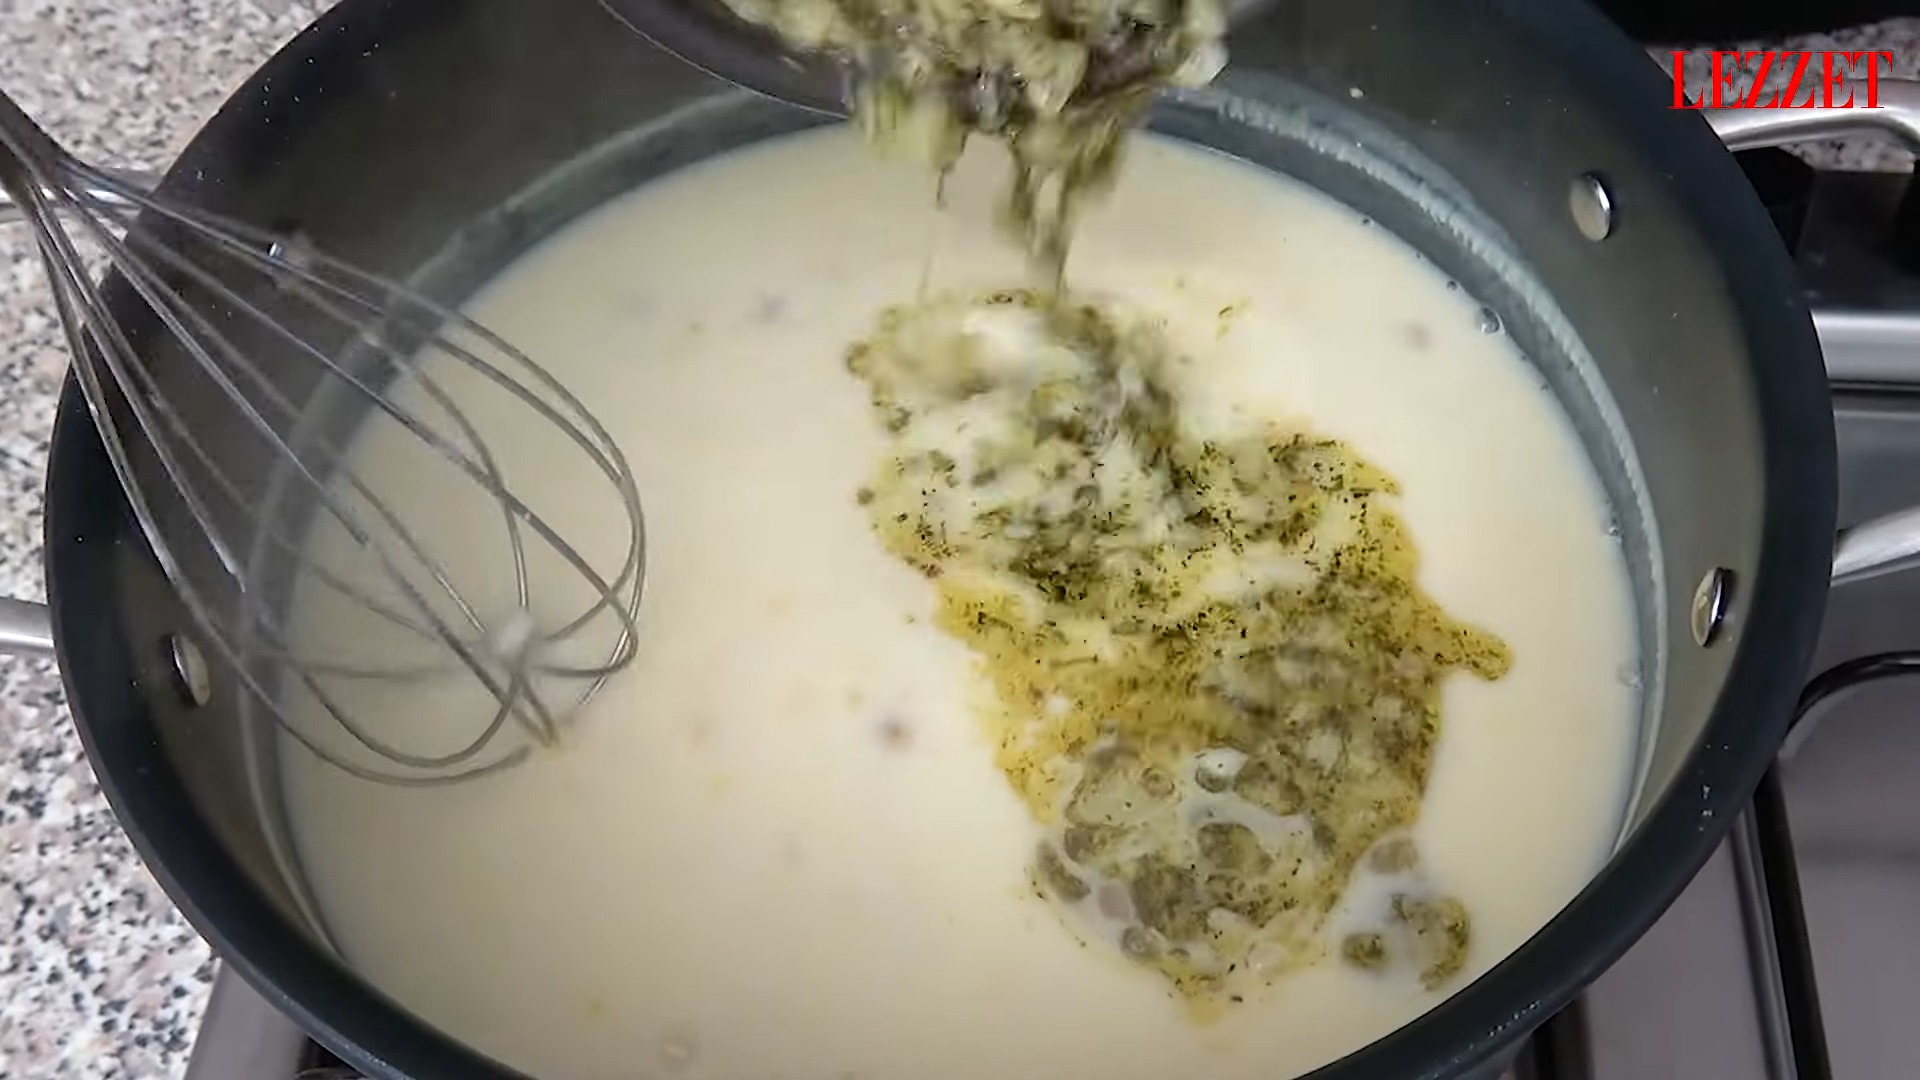 soğan eklenen çorba